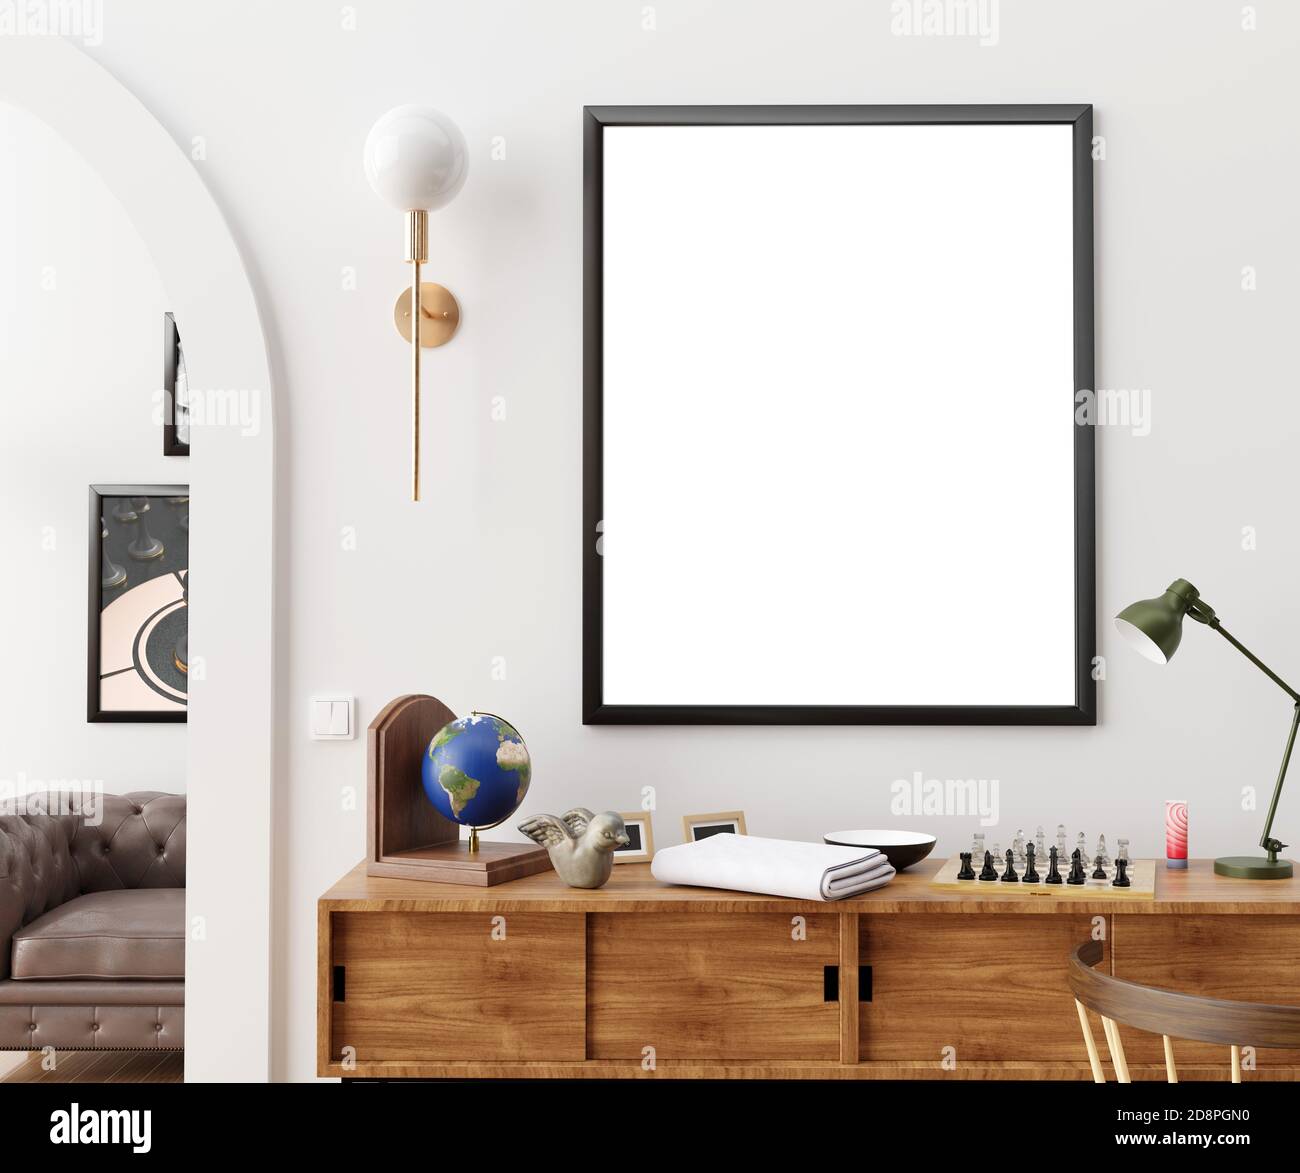 Frame mockup in interior 3d illustration Stock Photo